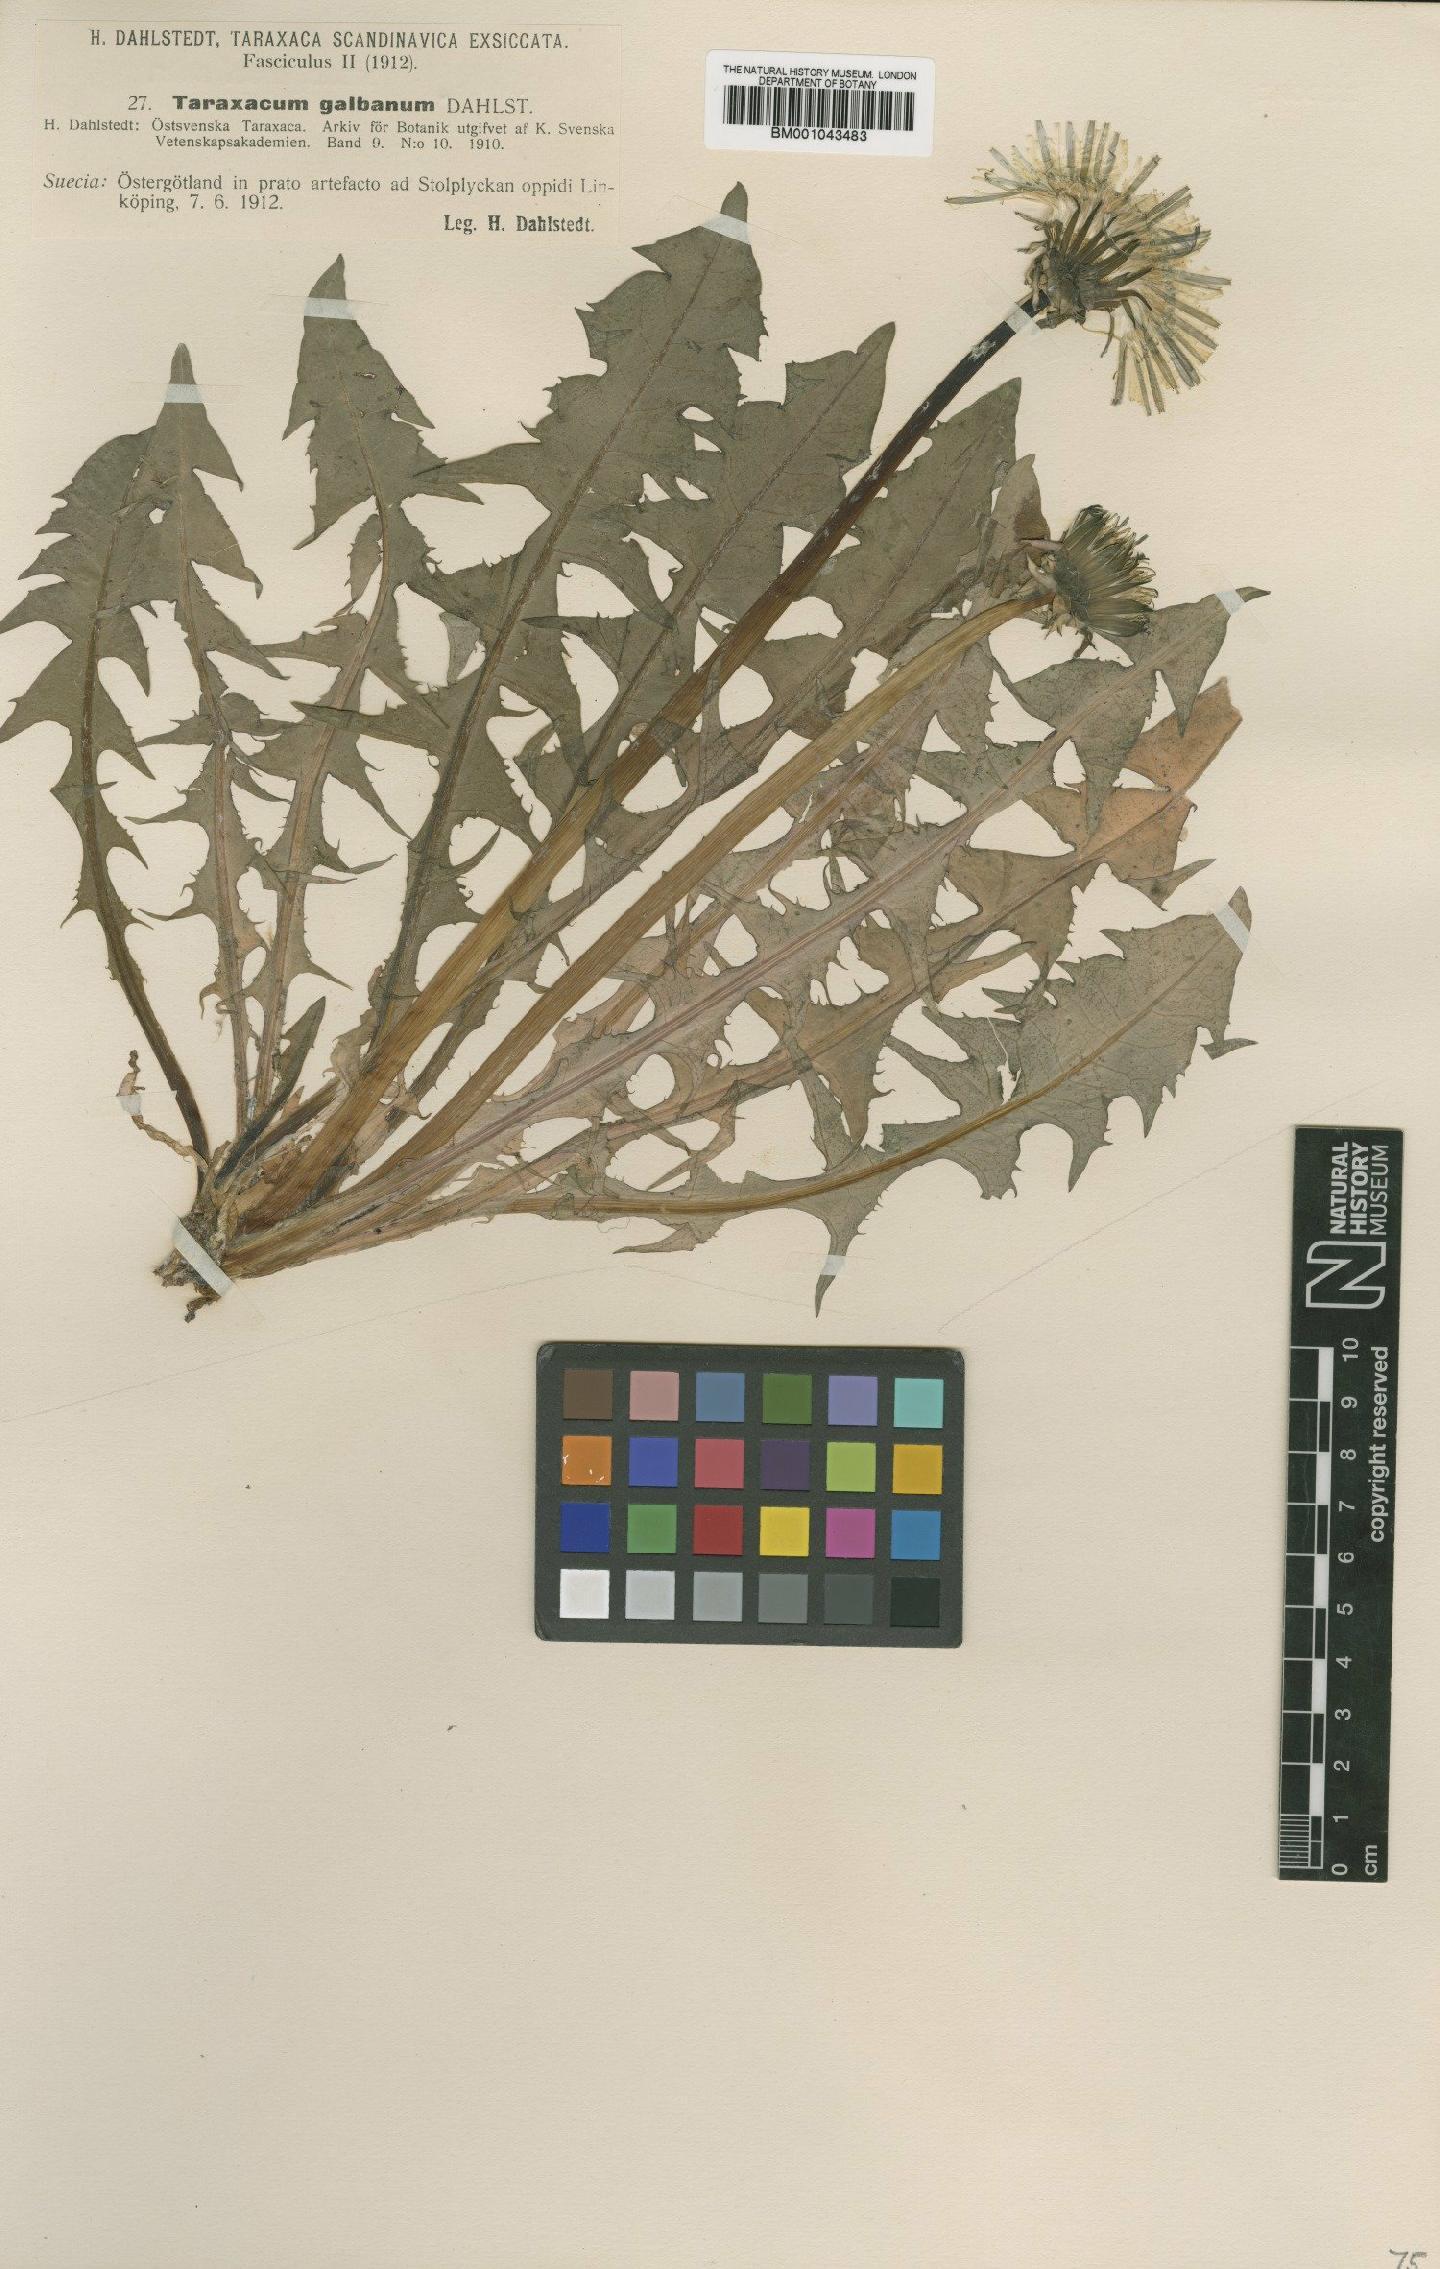 To NHMUK collection (Taraxacum galbanum Dahlst.; Type; NHMUK:ecatalogue:1998621)